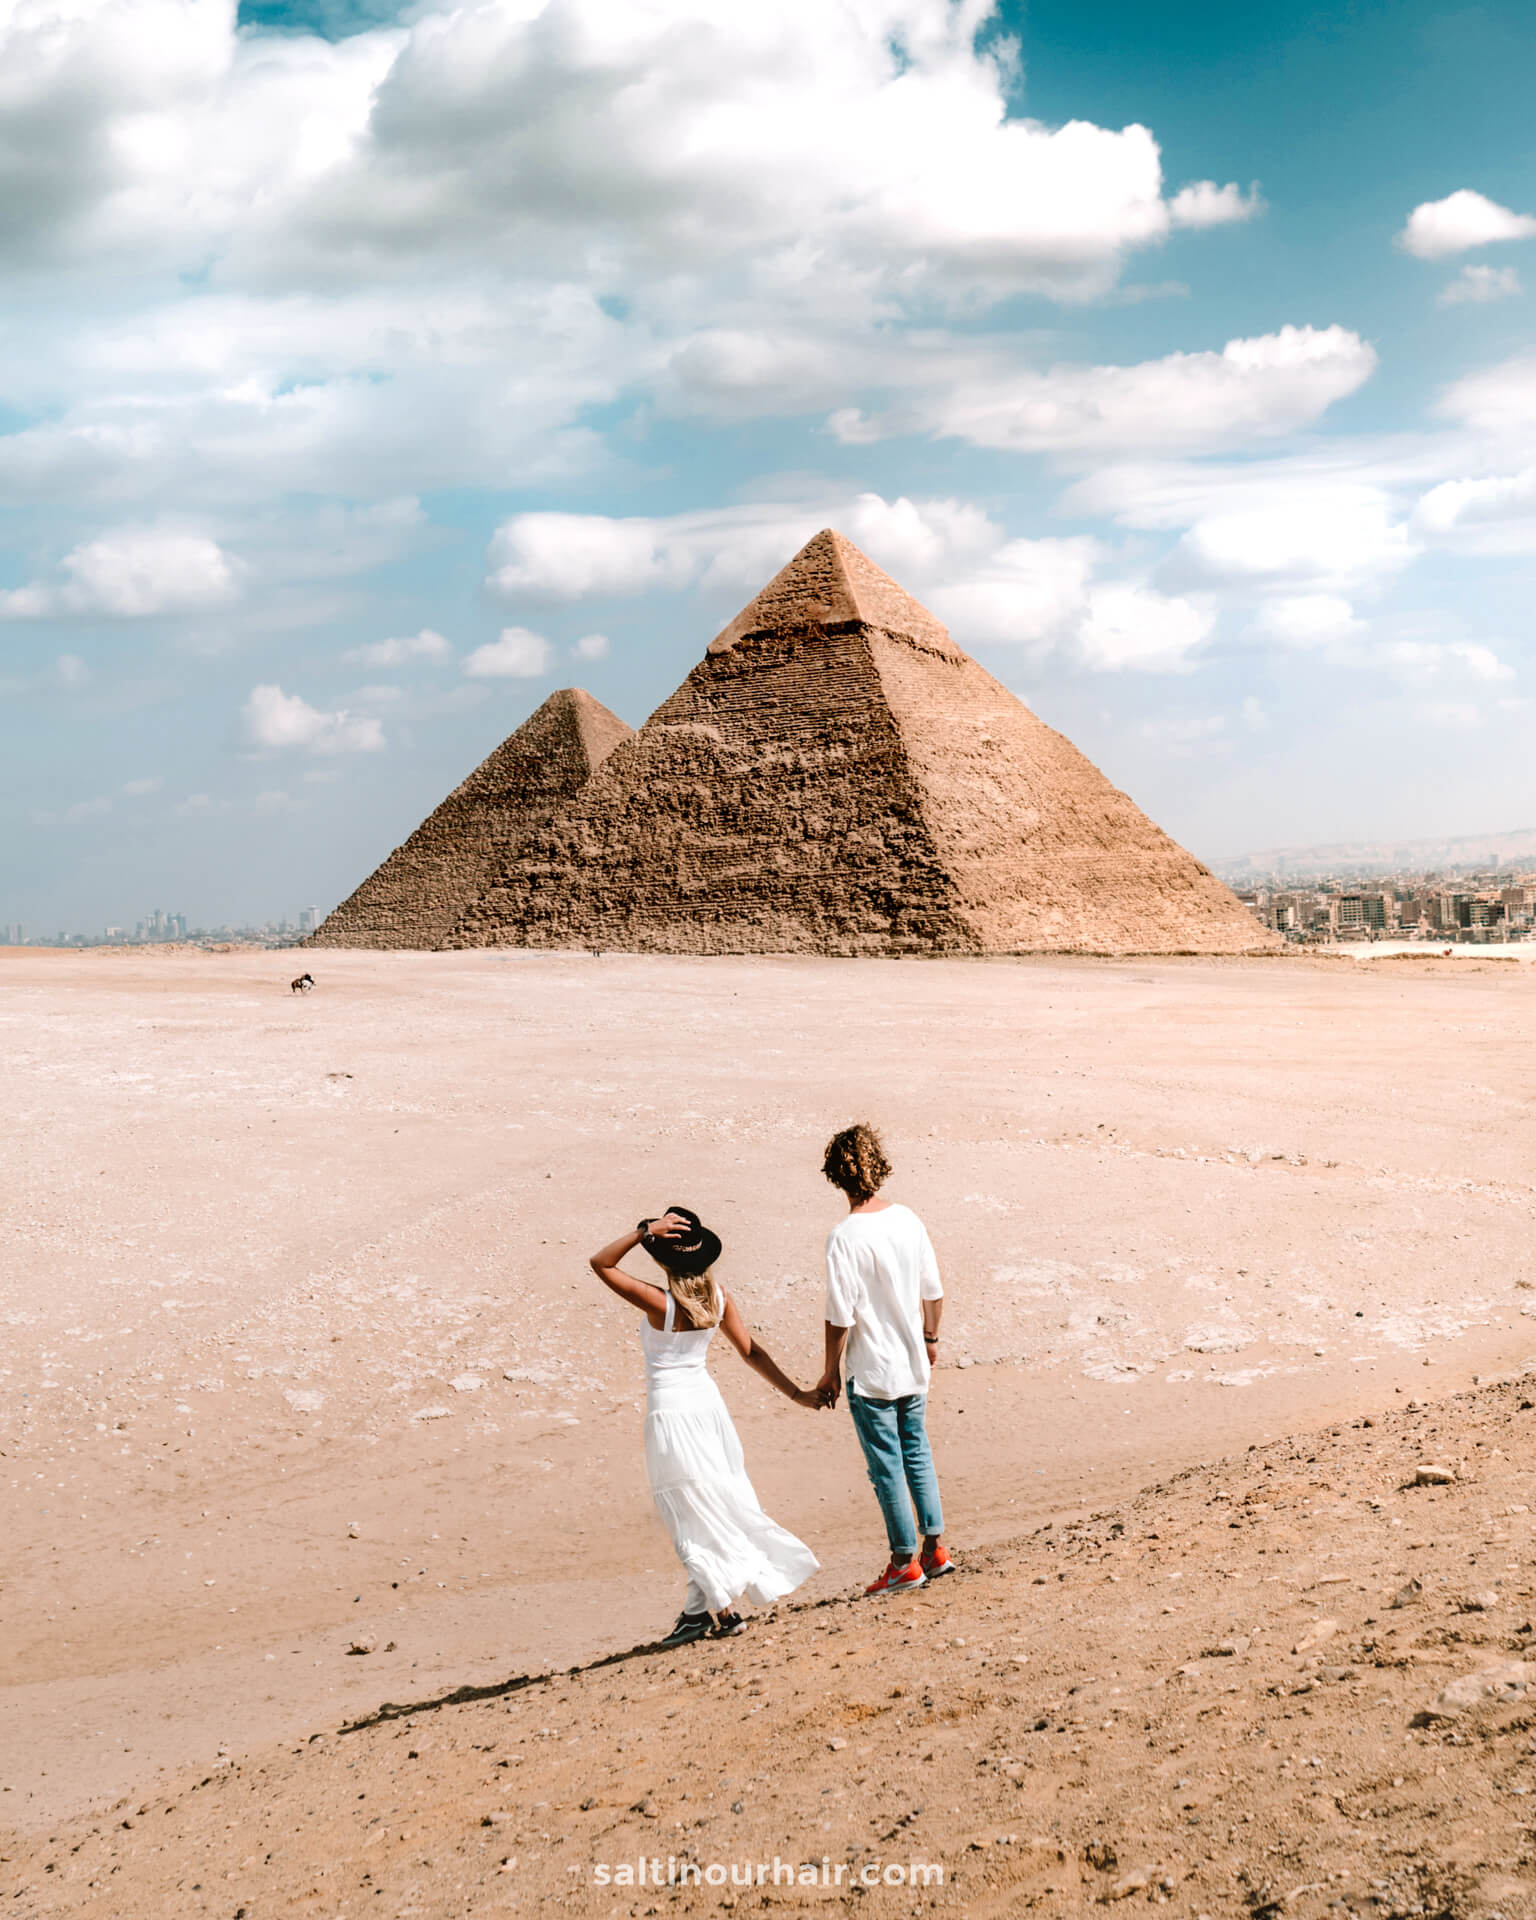 via egypt travel